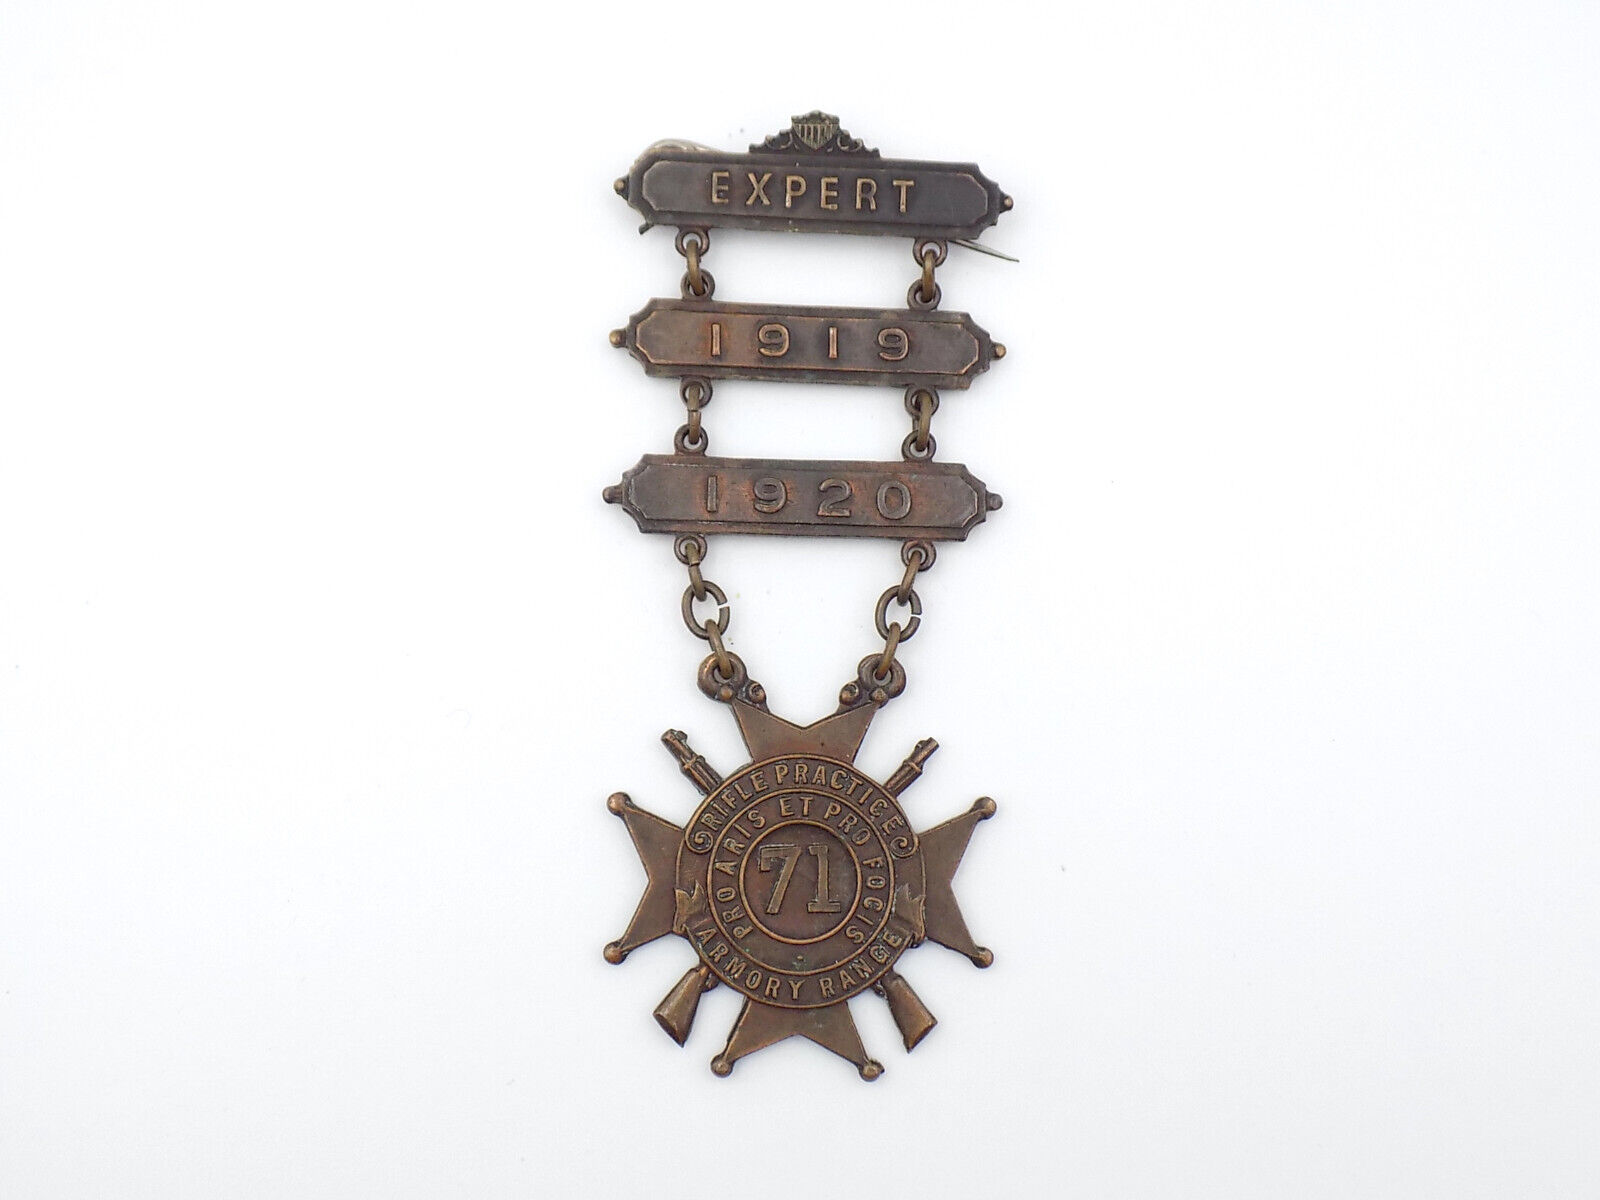 Original 1919-1920 National Guard Expert Marksman Badge